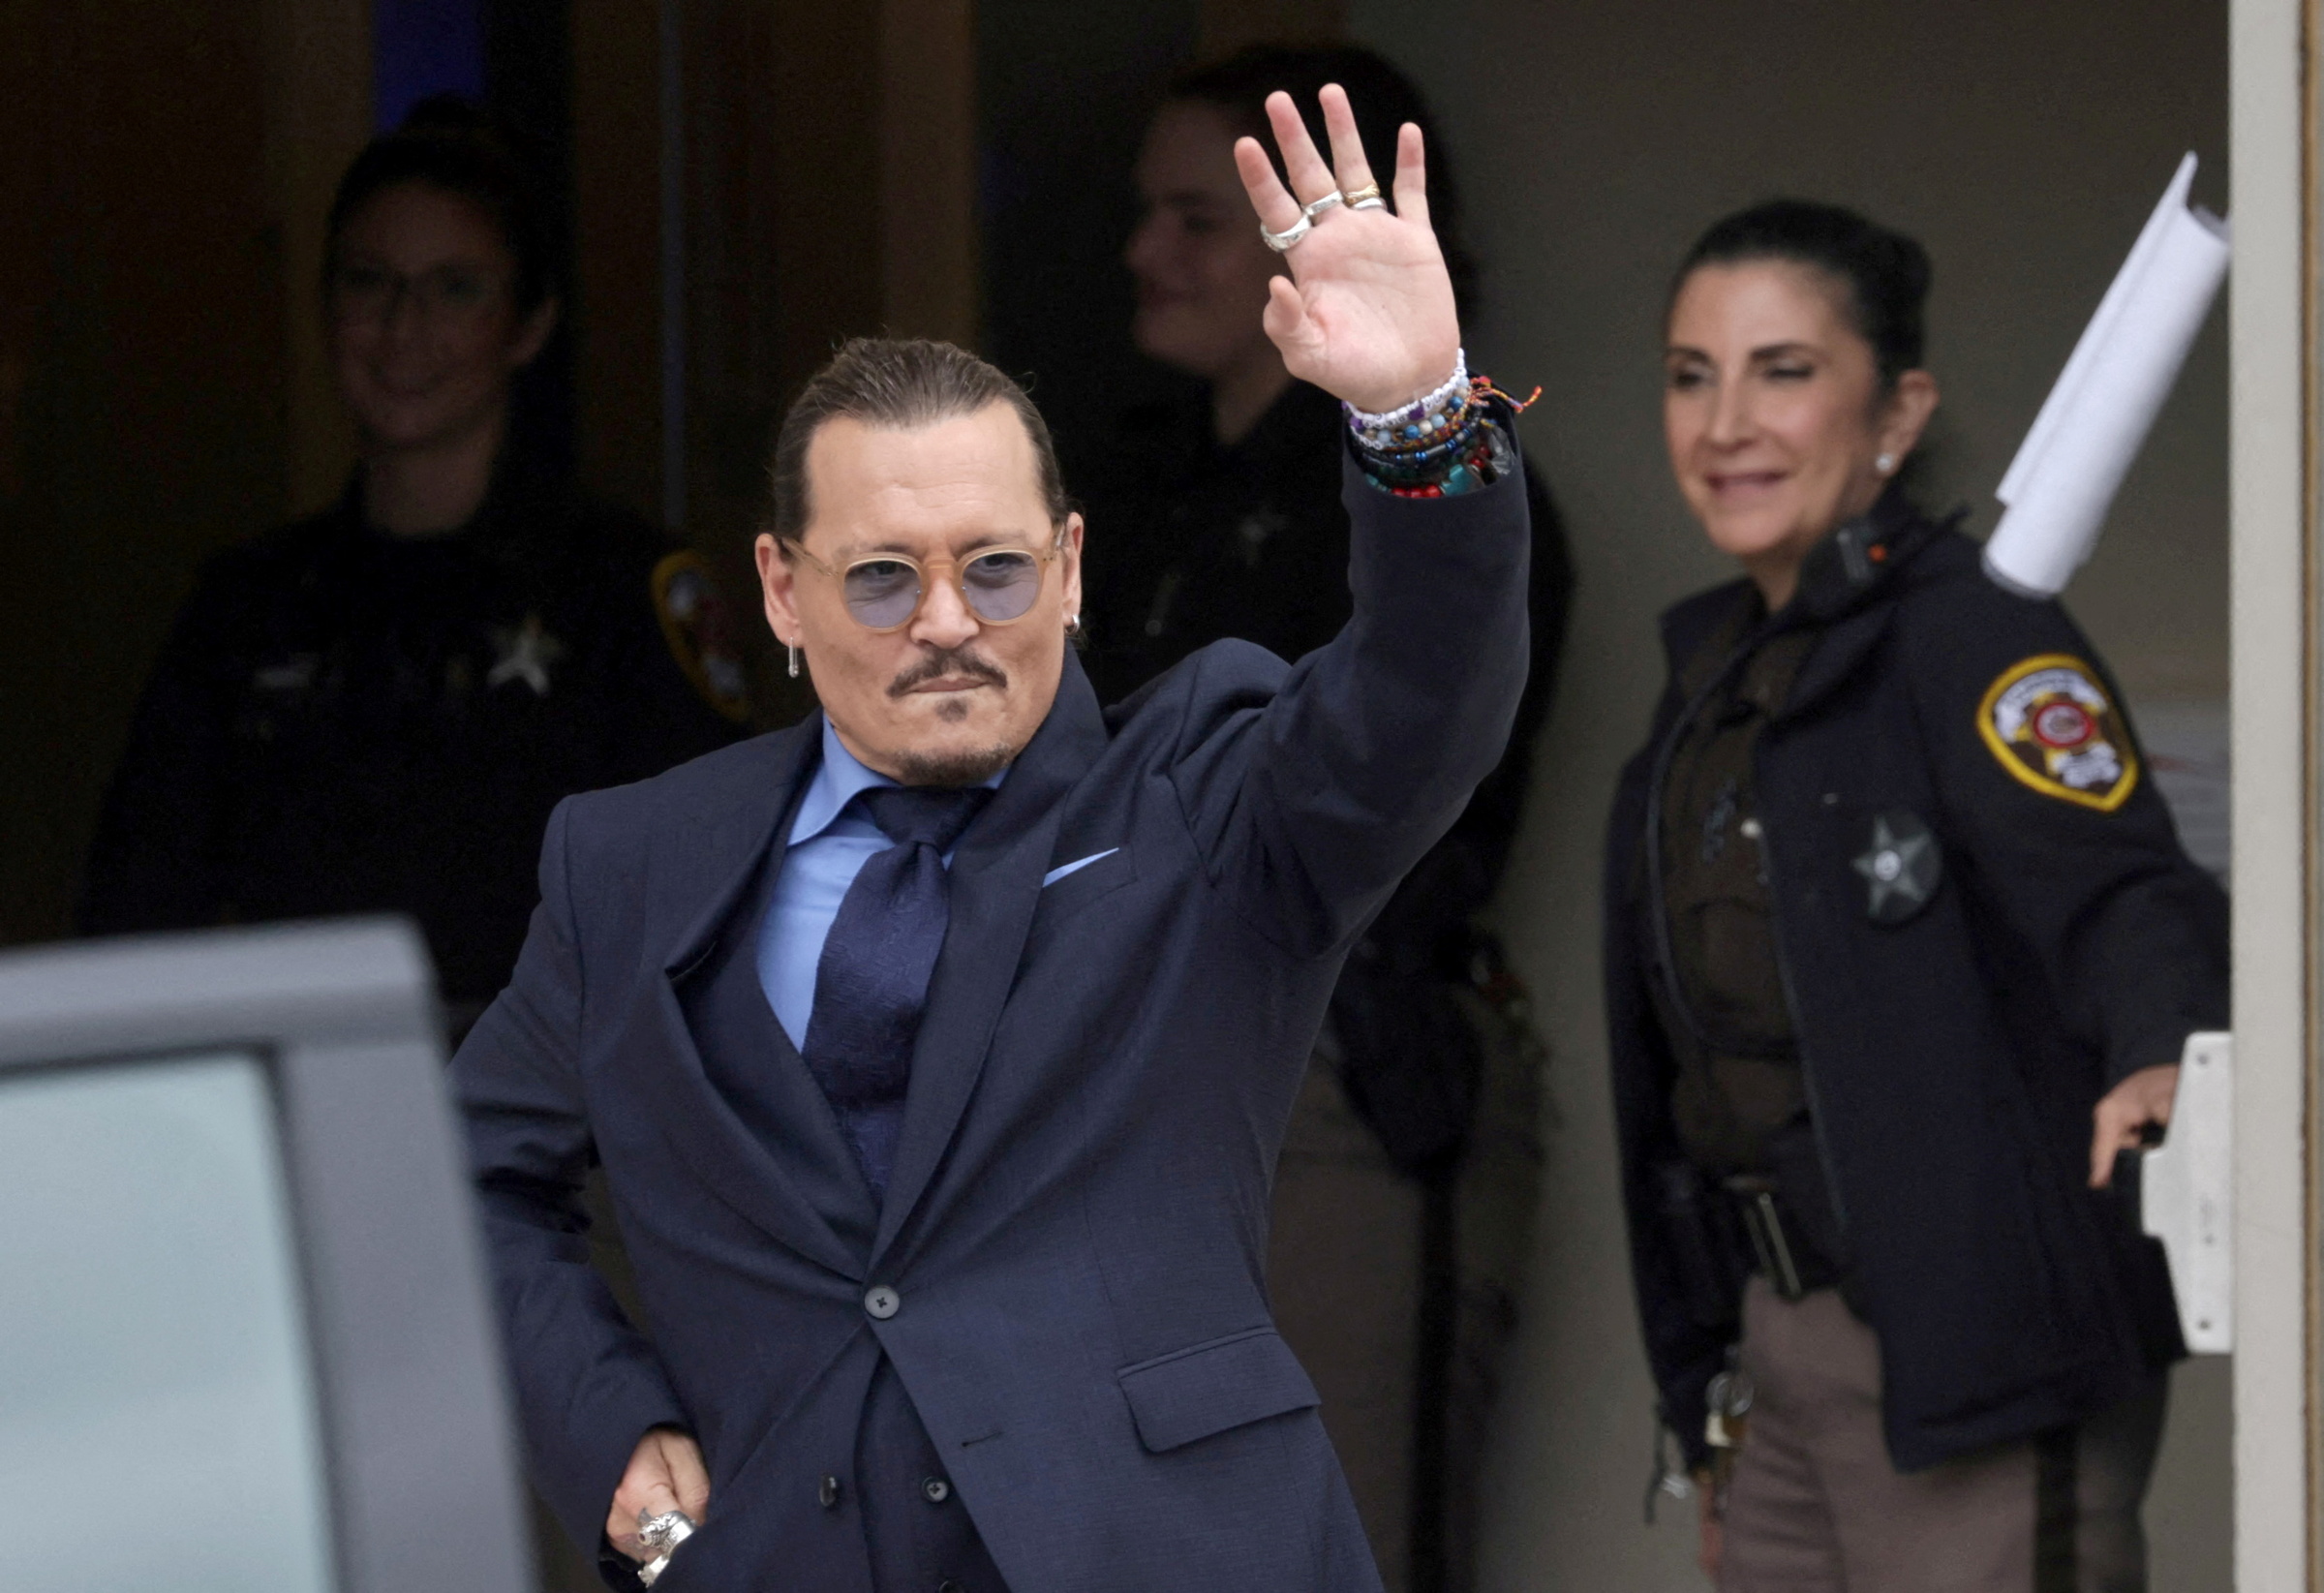 Johnny Depp cảm ơn người hâm mộ tới ủng hộ tại phiên xử hôm 31/5. Ảnh: Reuters